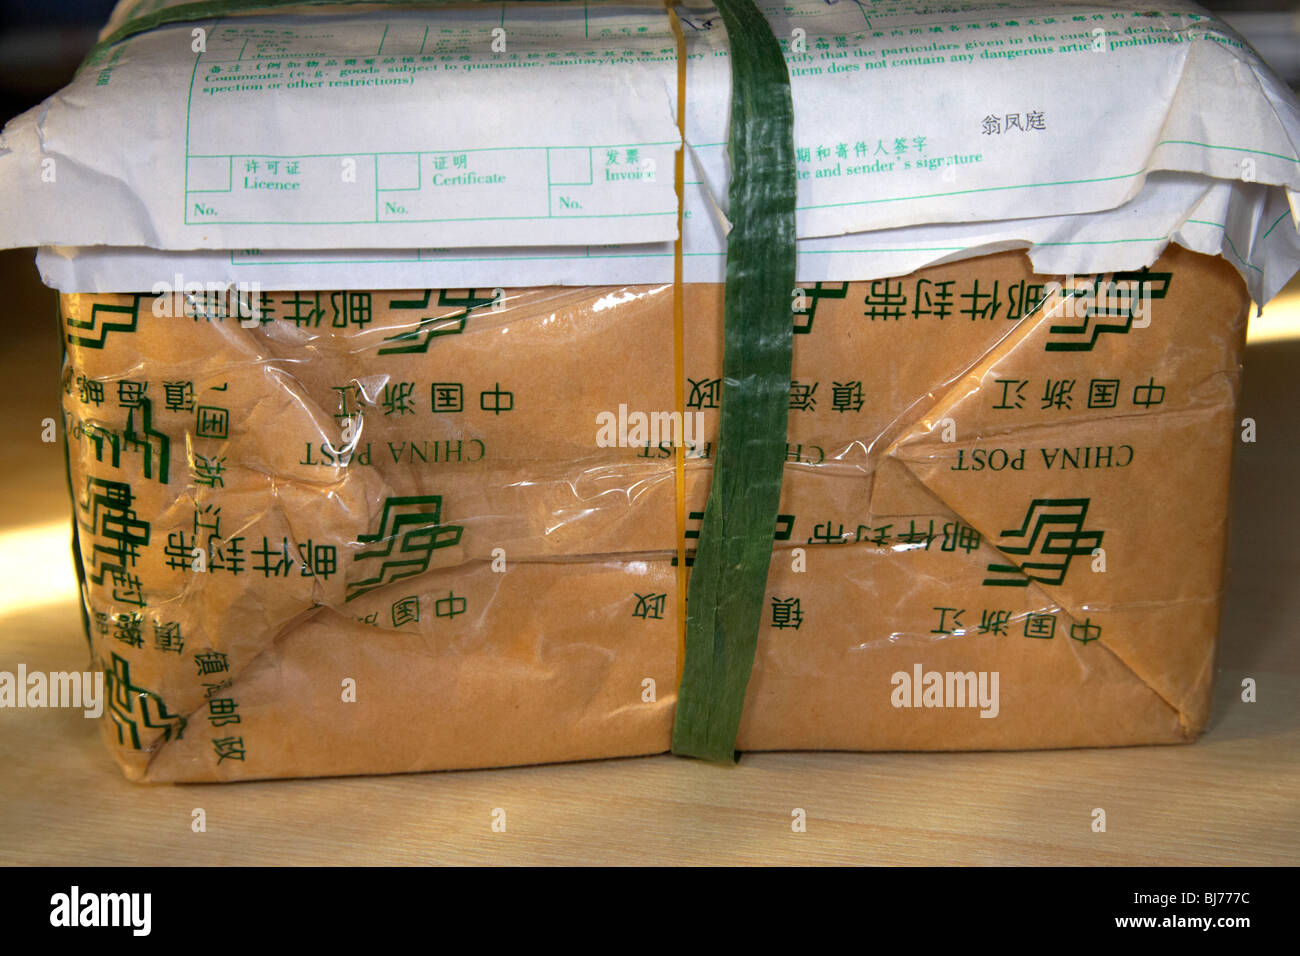 Paket aus China erhielt in Großbritannien mit chinesischen Verpackung und  Zoll-Abfertigung-Formular gesendet Stockfotografie - Alamy